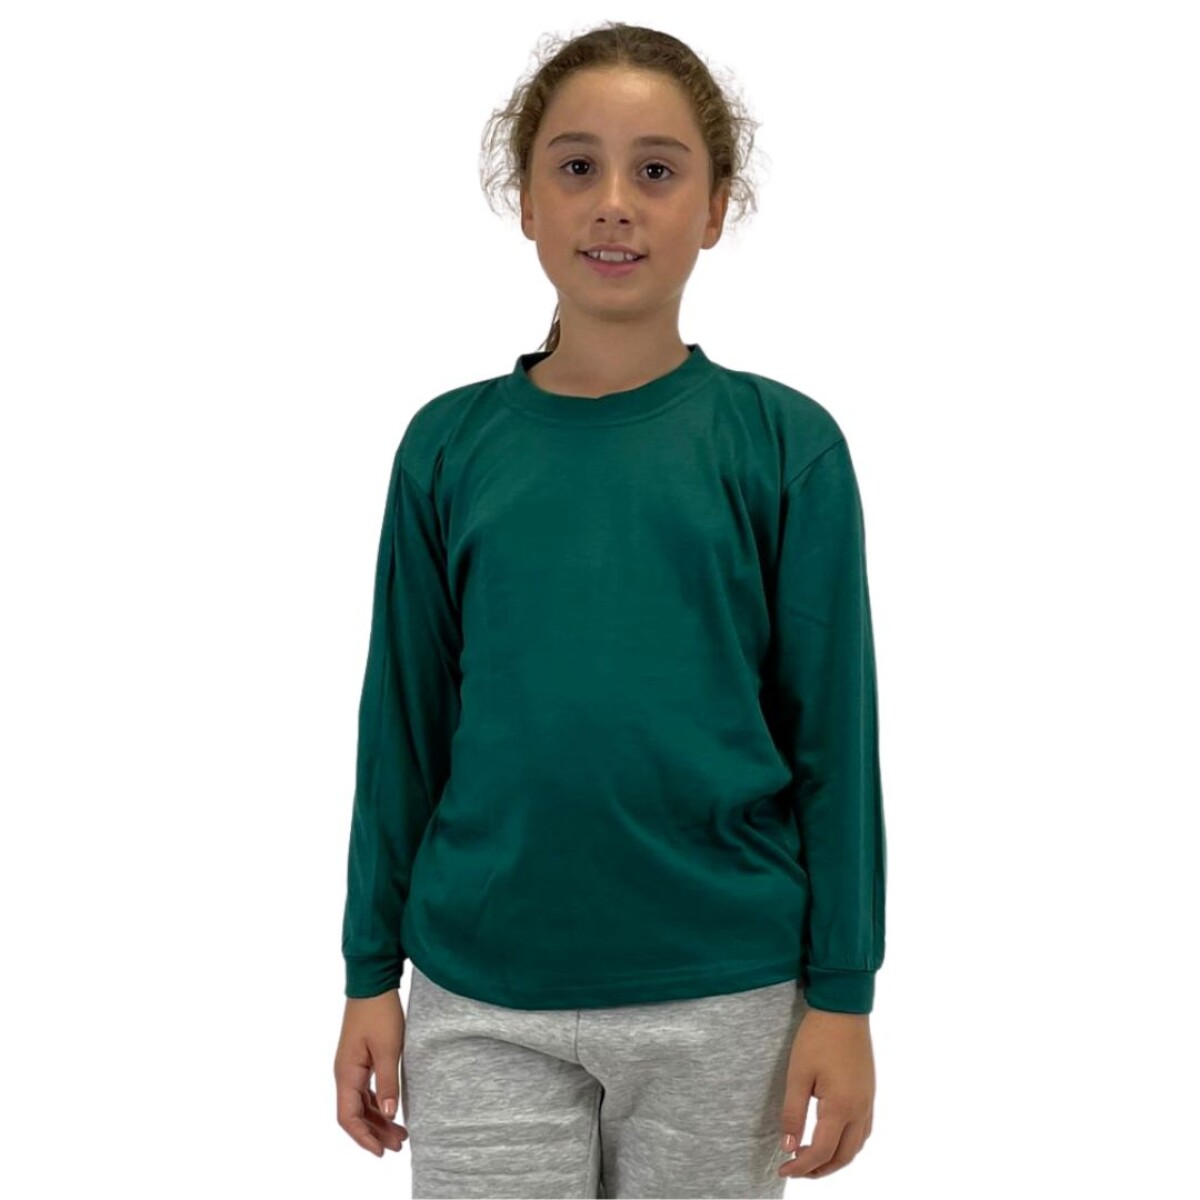 Camiseta Niño manga larga - Verde inglés 